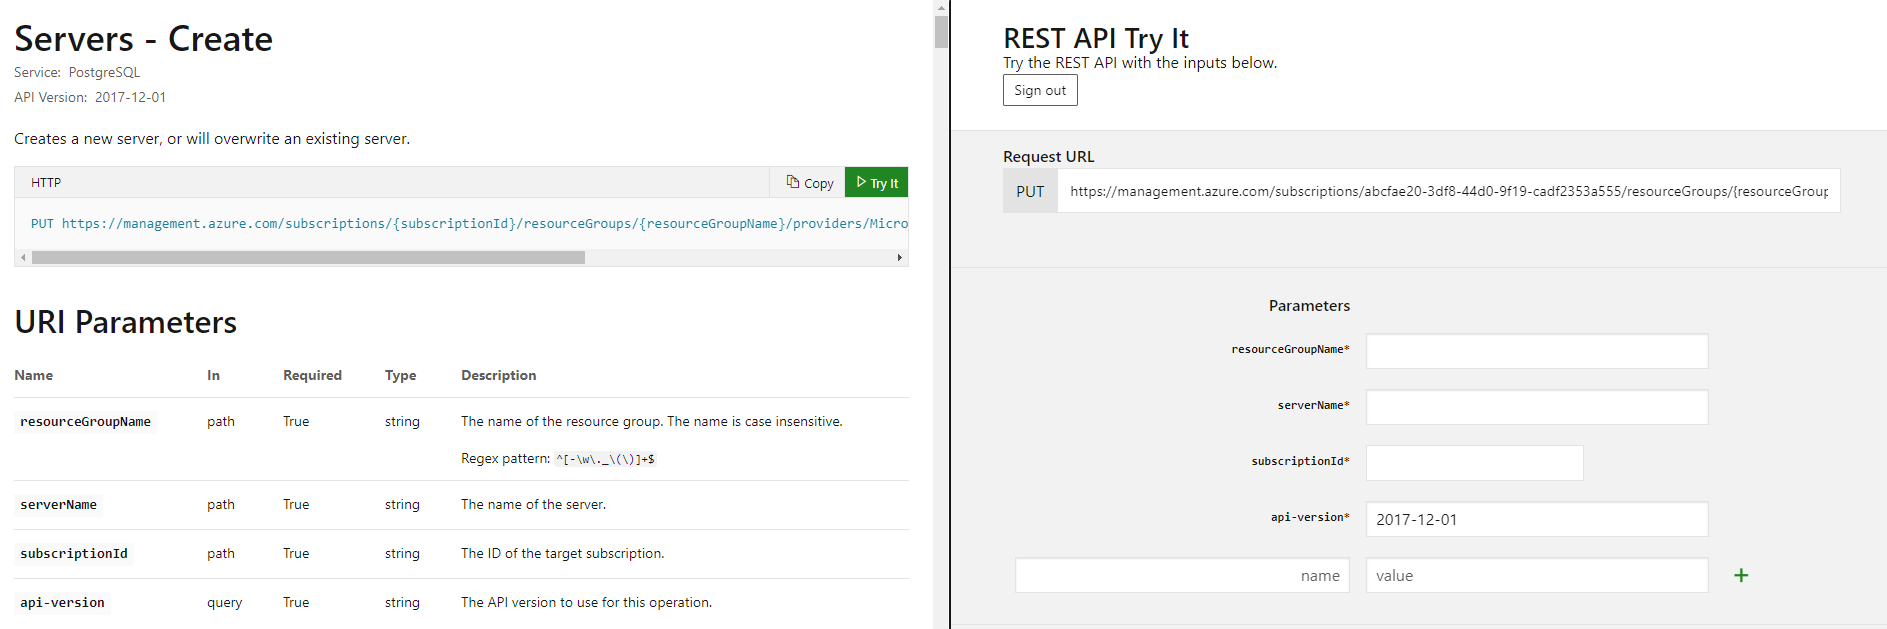 Criar servidor usando a API REST